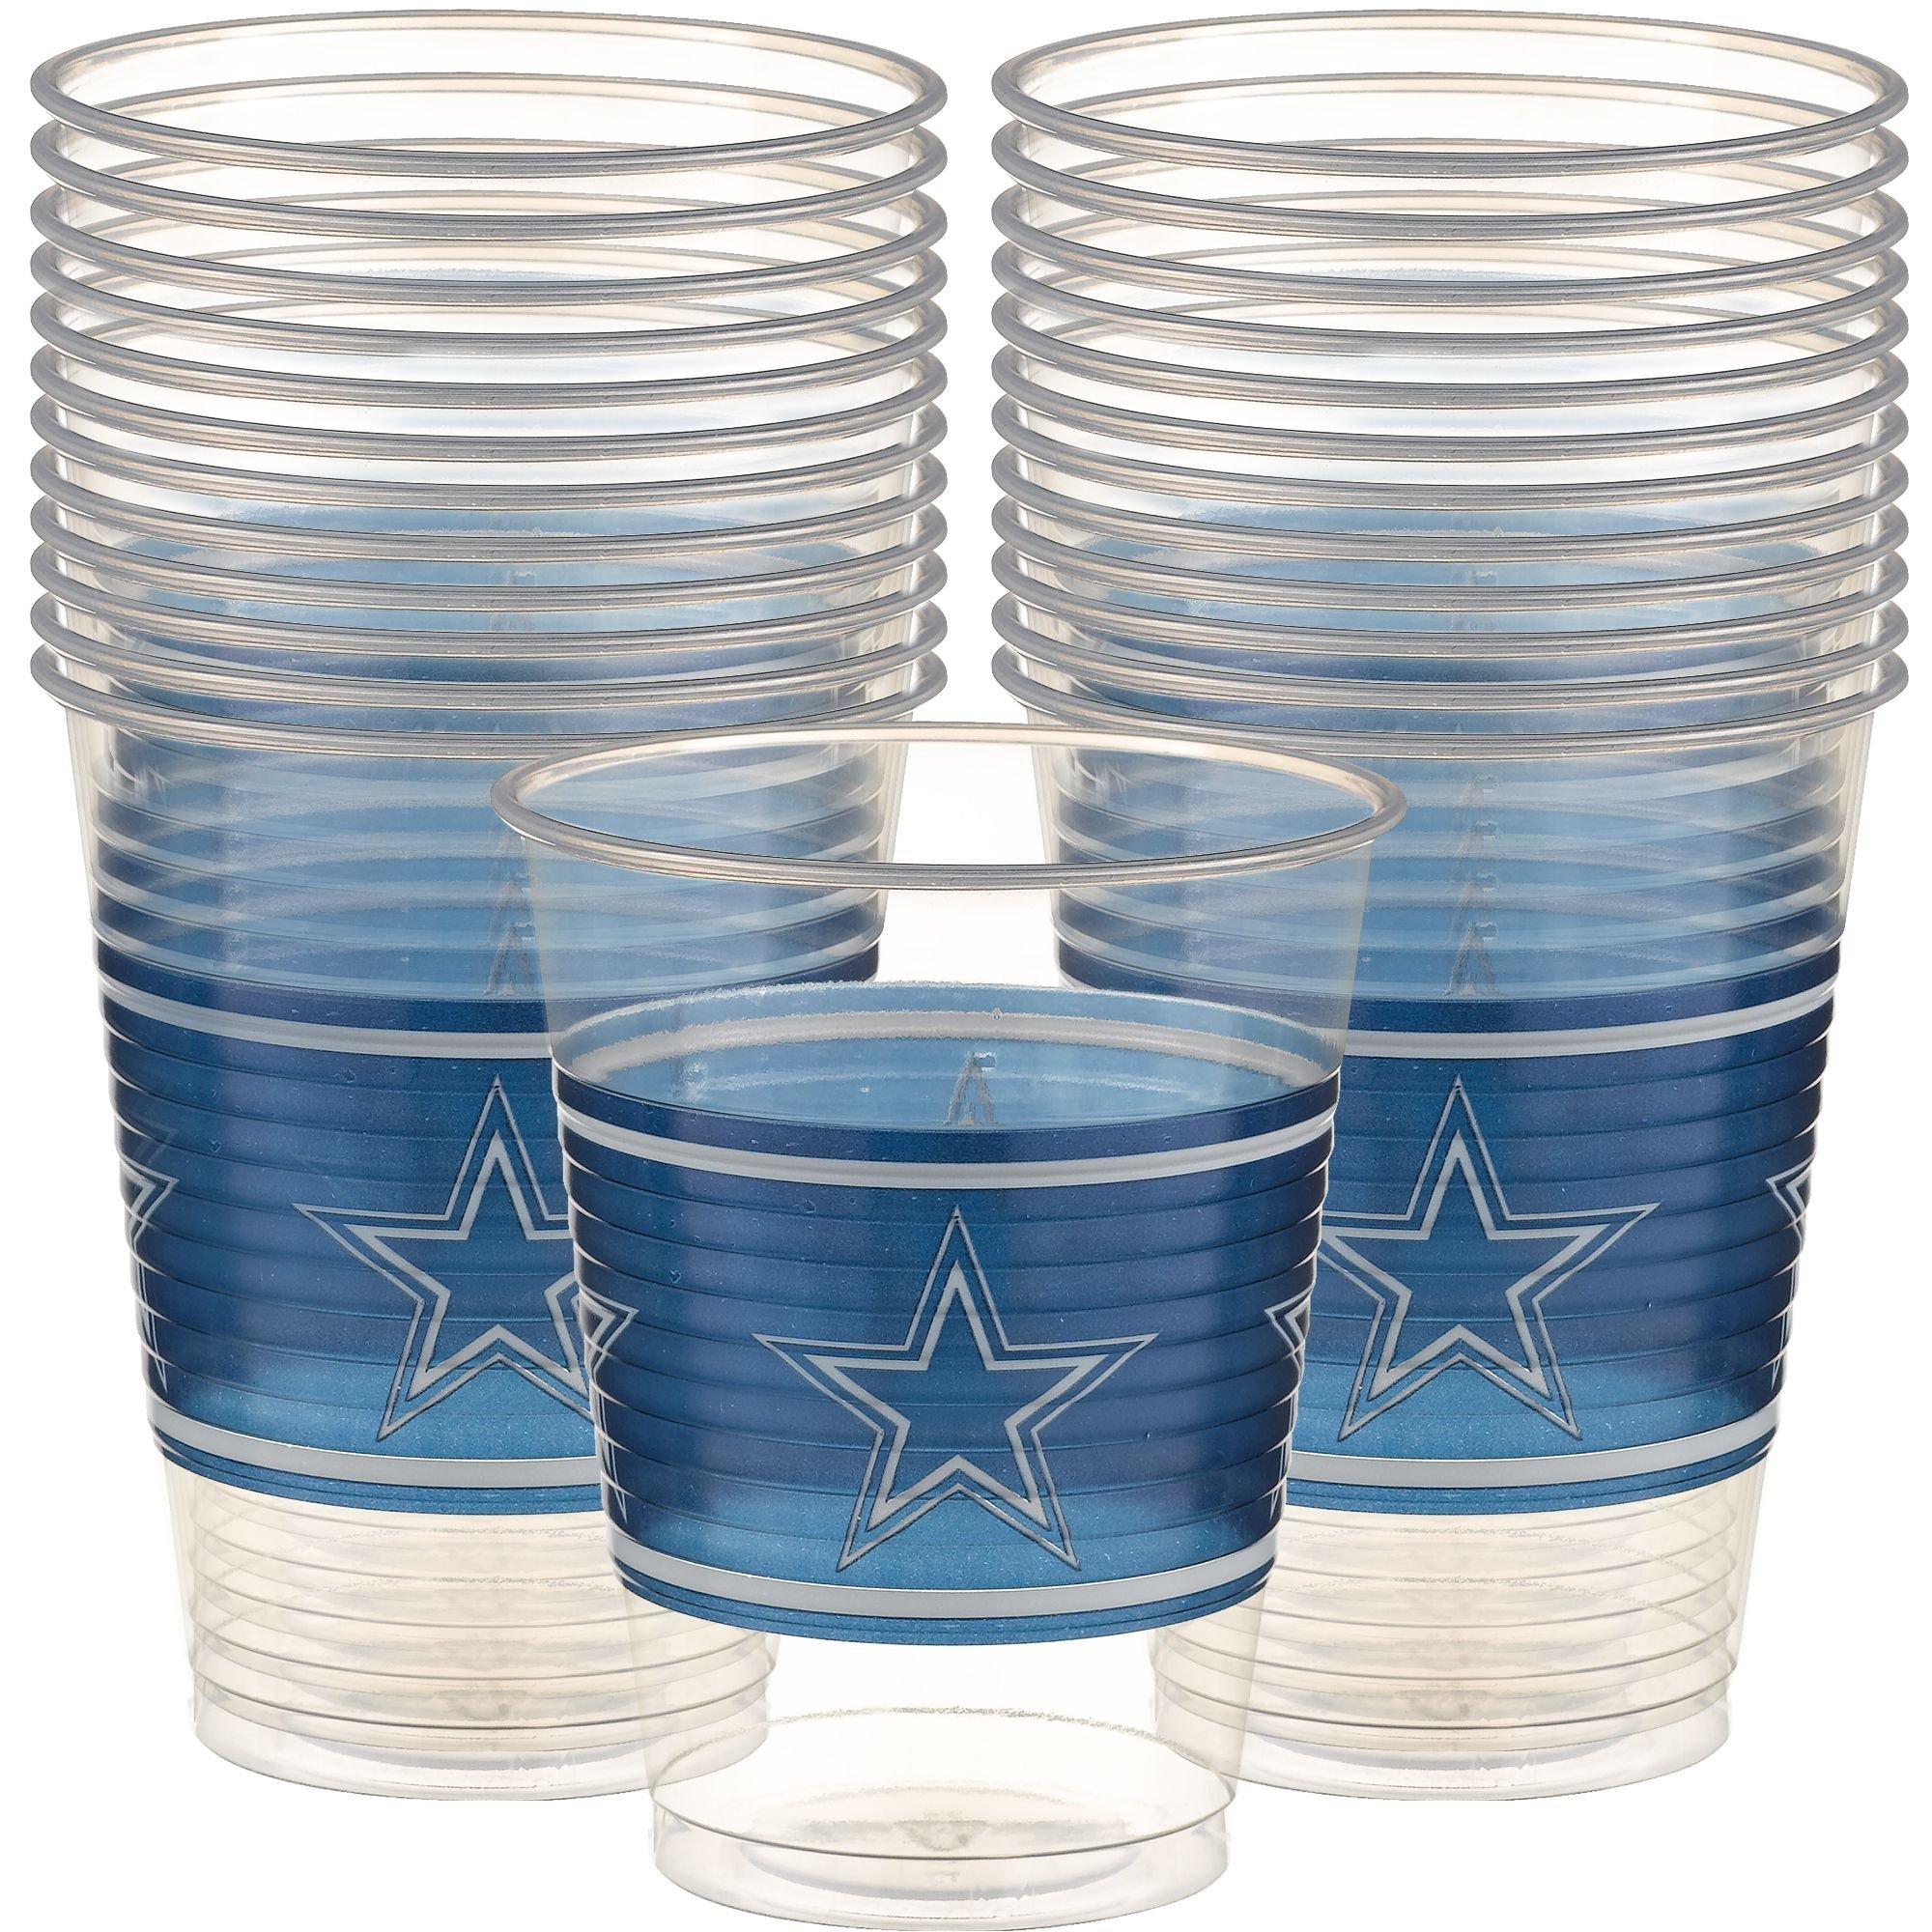 Dallas Cowboys Cups